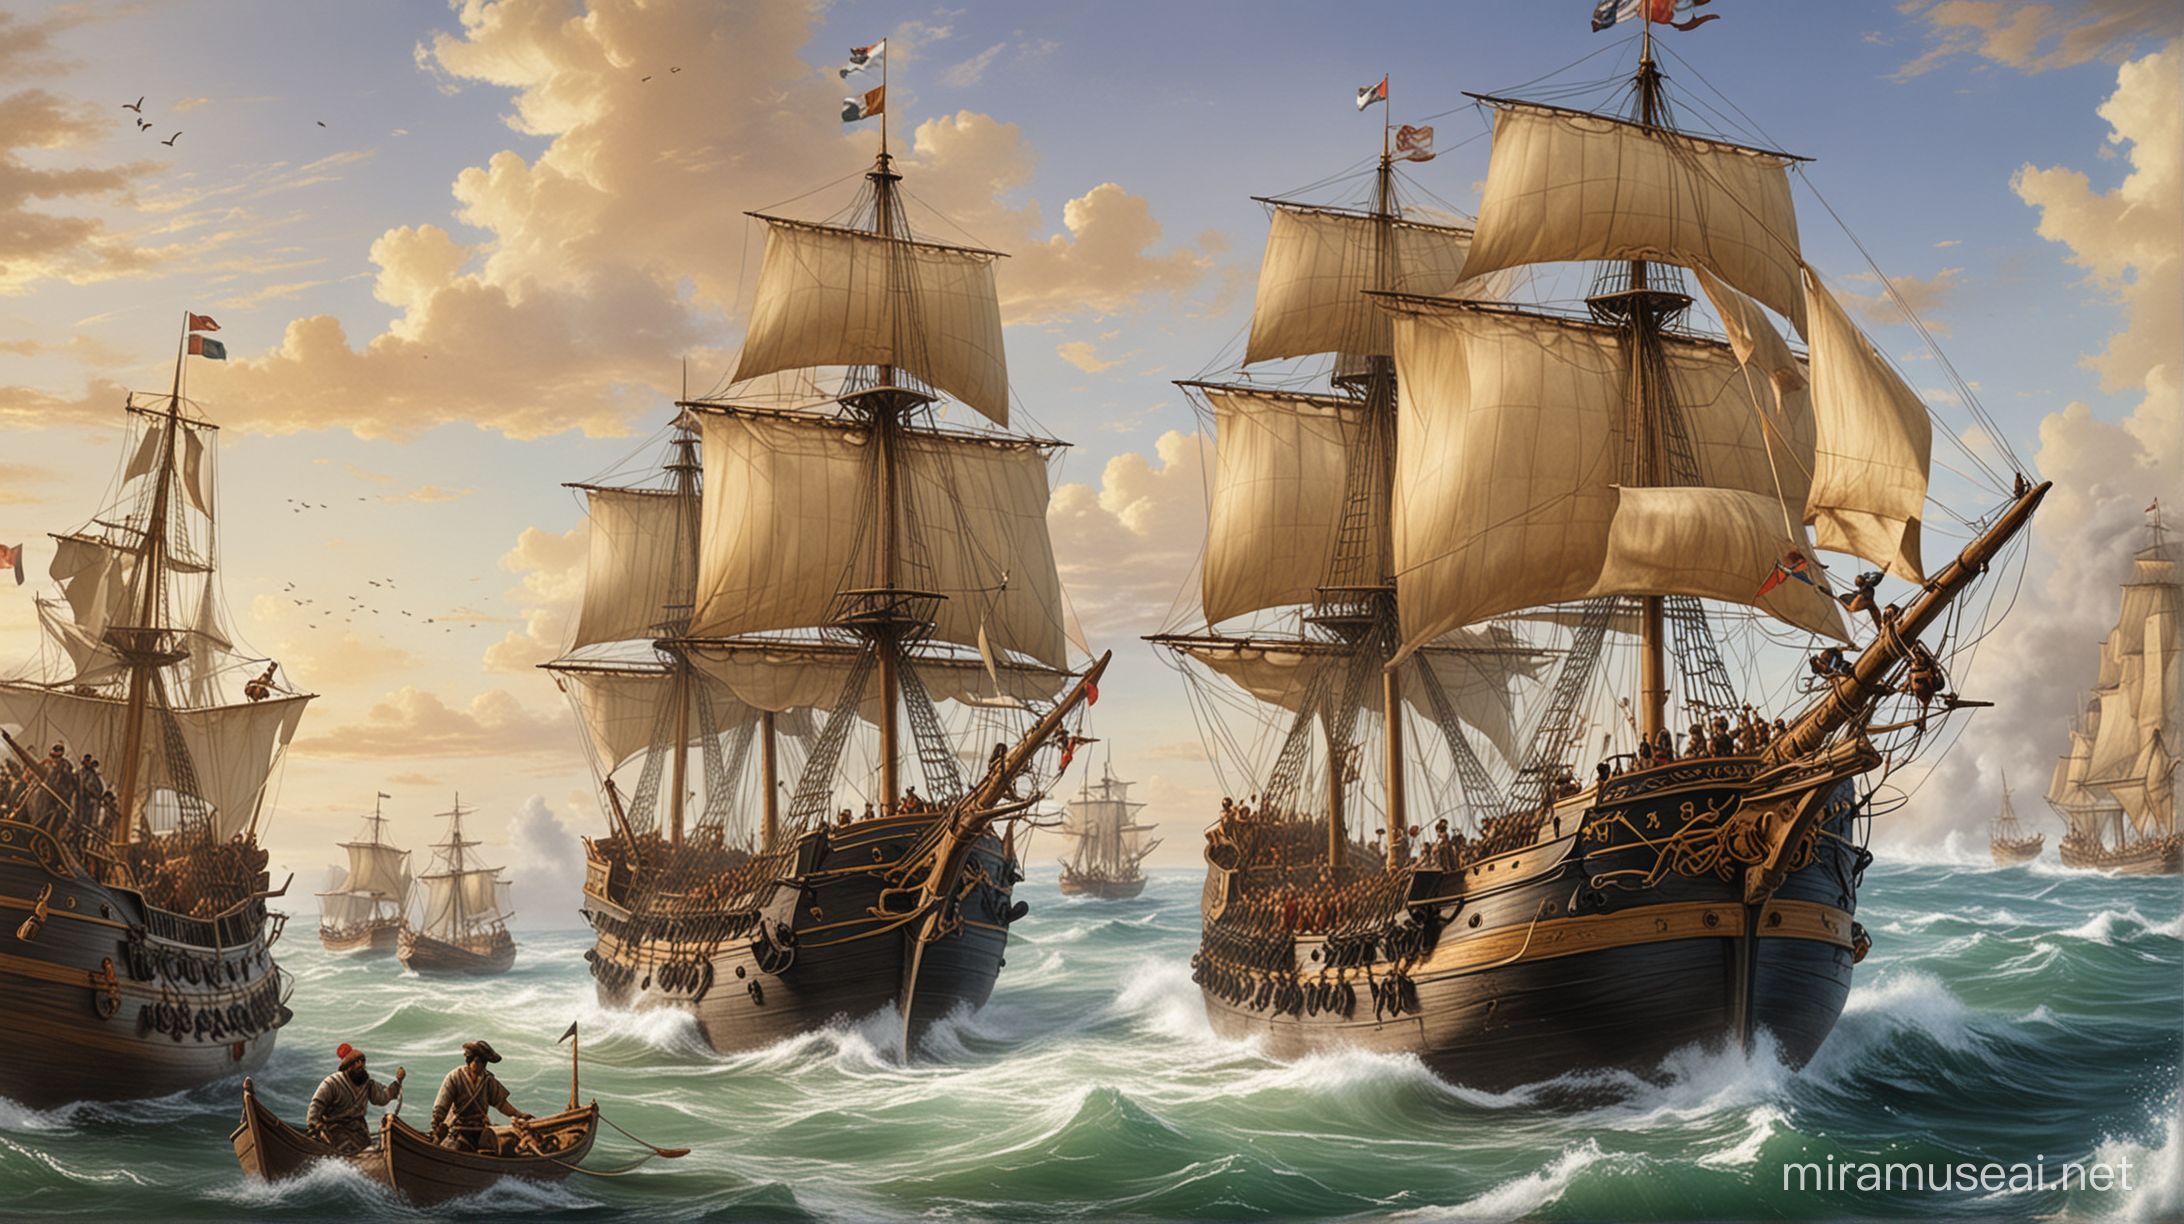 изображение мореплавателей, таких как Васко да Гама и Магеллан, открывающих новые маршруты